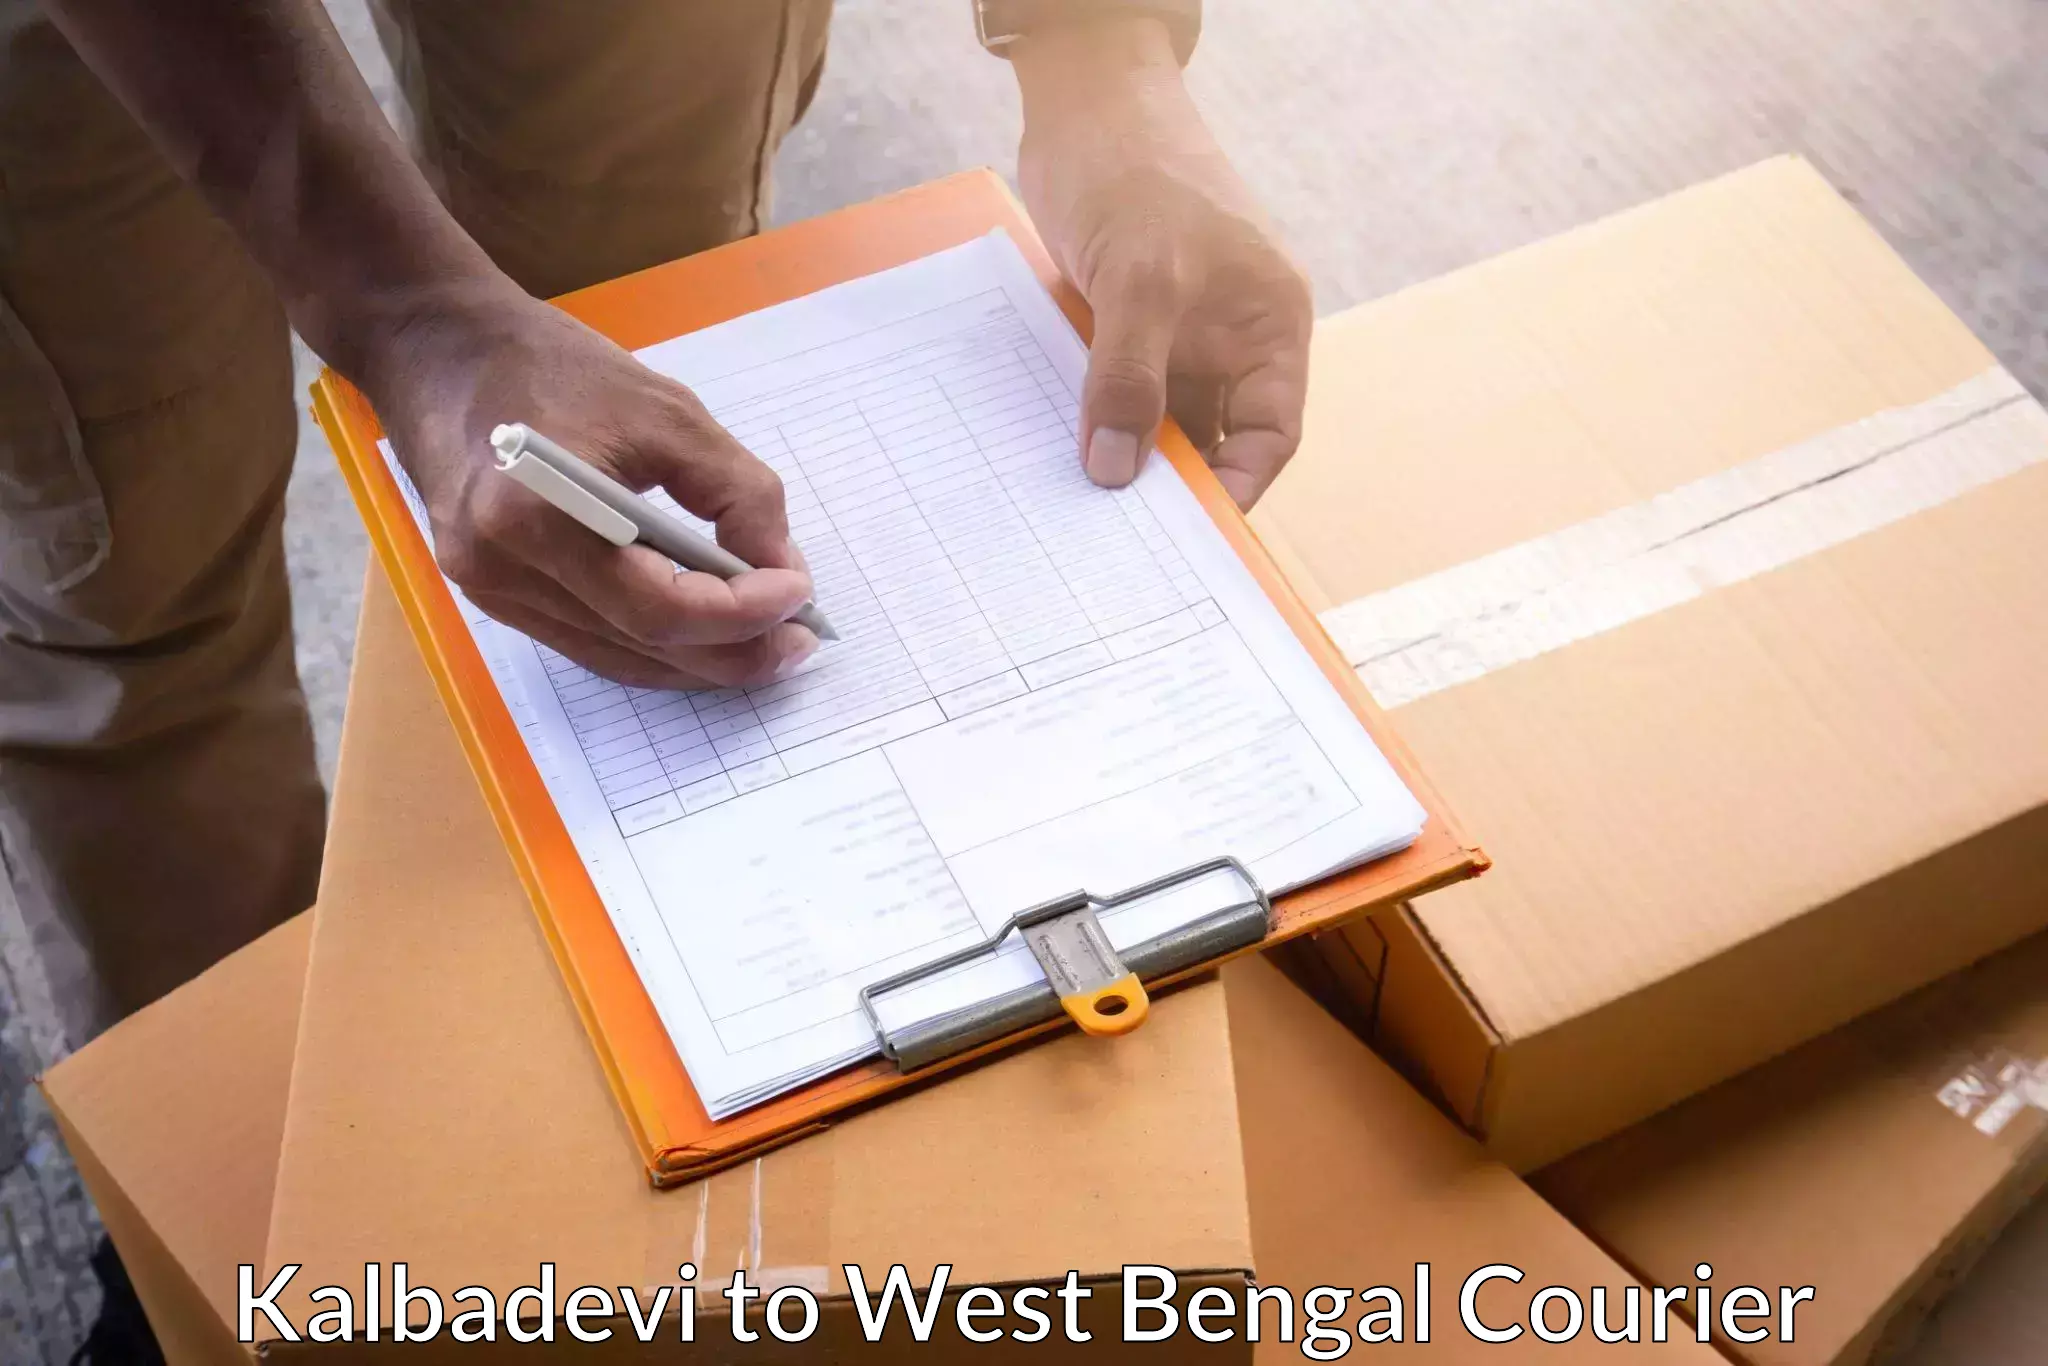 Versatile courier offerings Kalbadevi to Kolkata Port